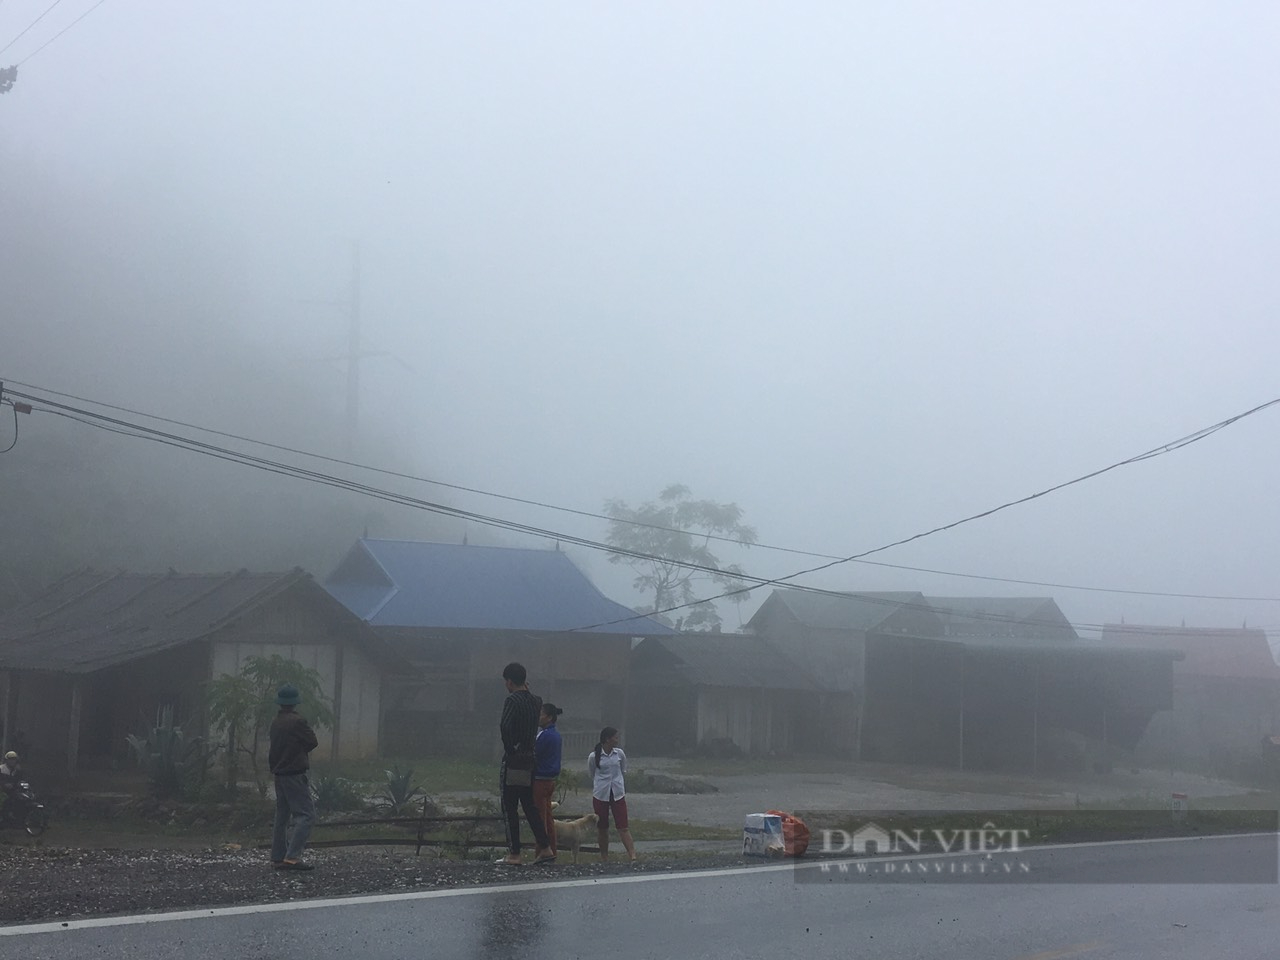  Sơn La: Mưa lớn kèm theo gió bấc, sương mù dày đặc, người dân co ro trong giá rét - Ảnh 6.